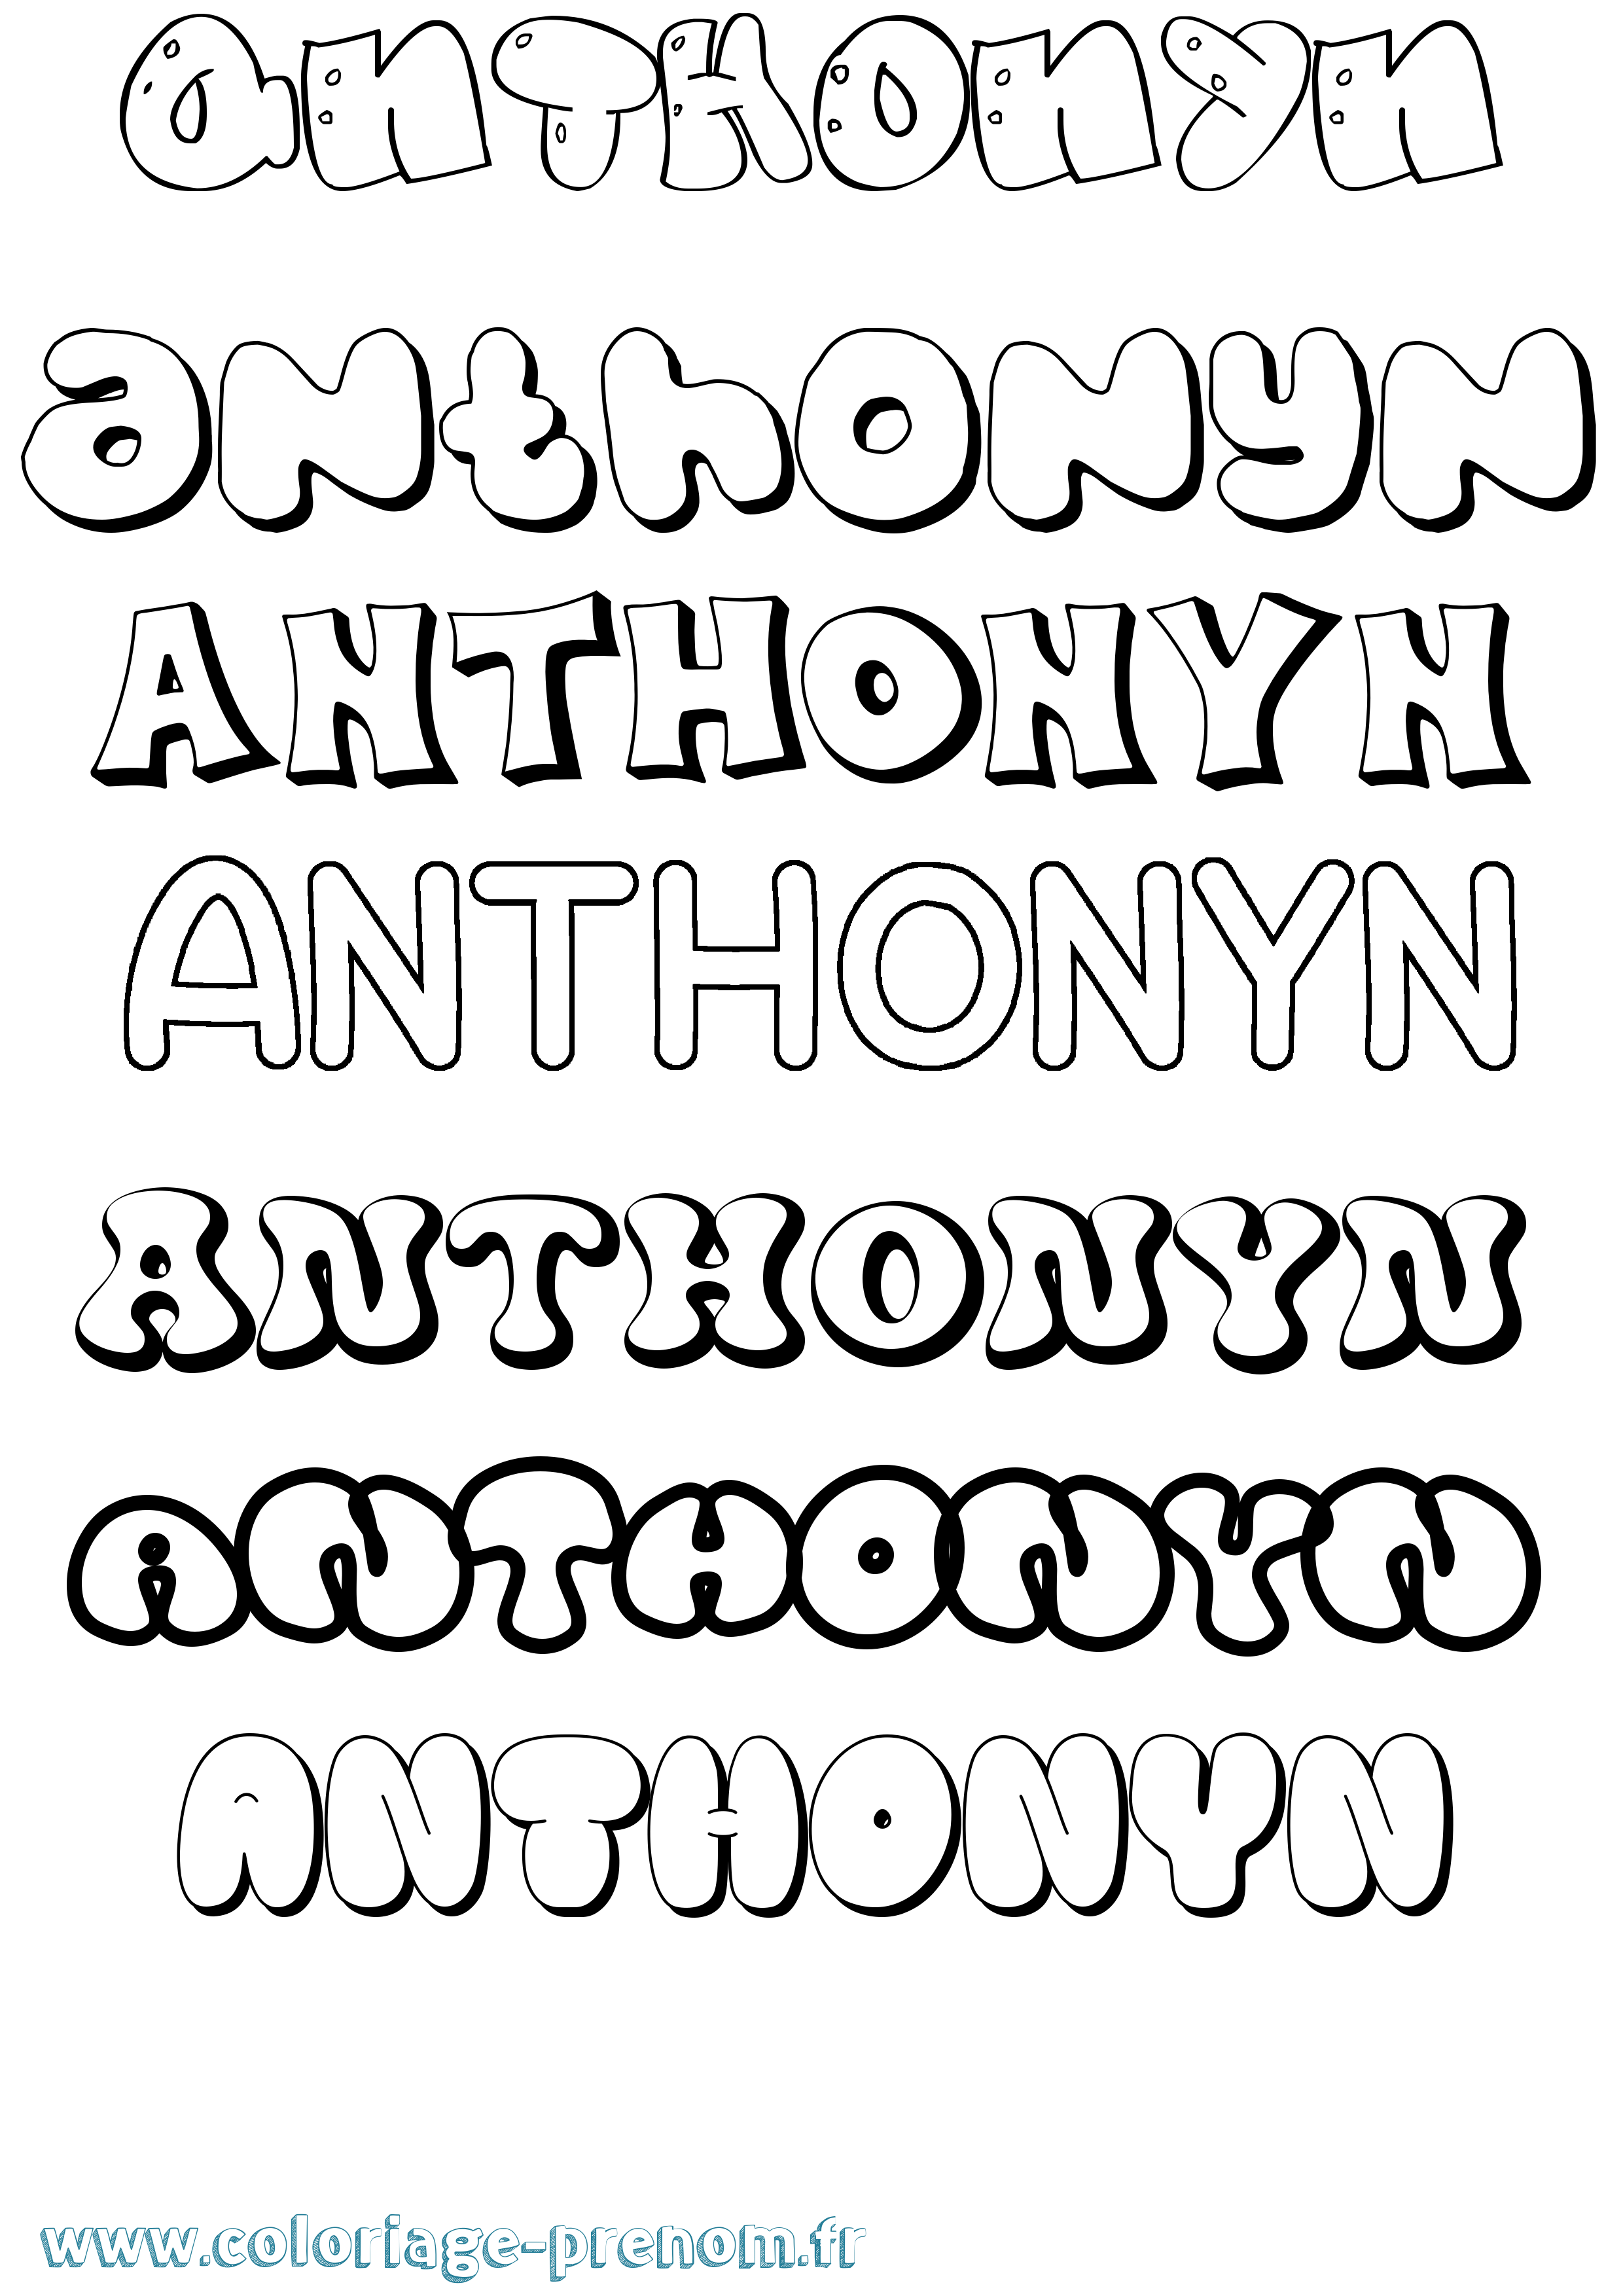 Coloriage prénom Anthonyn Bubble